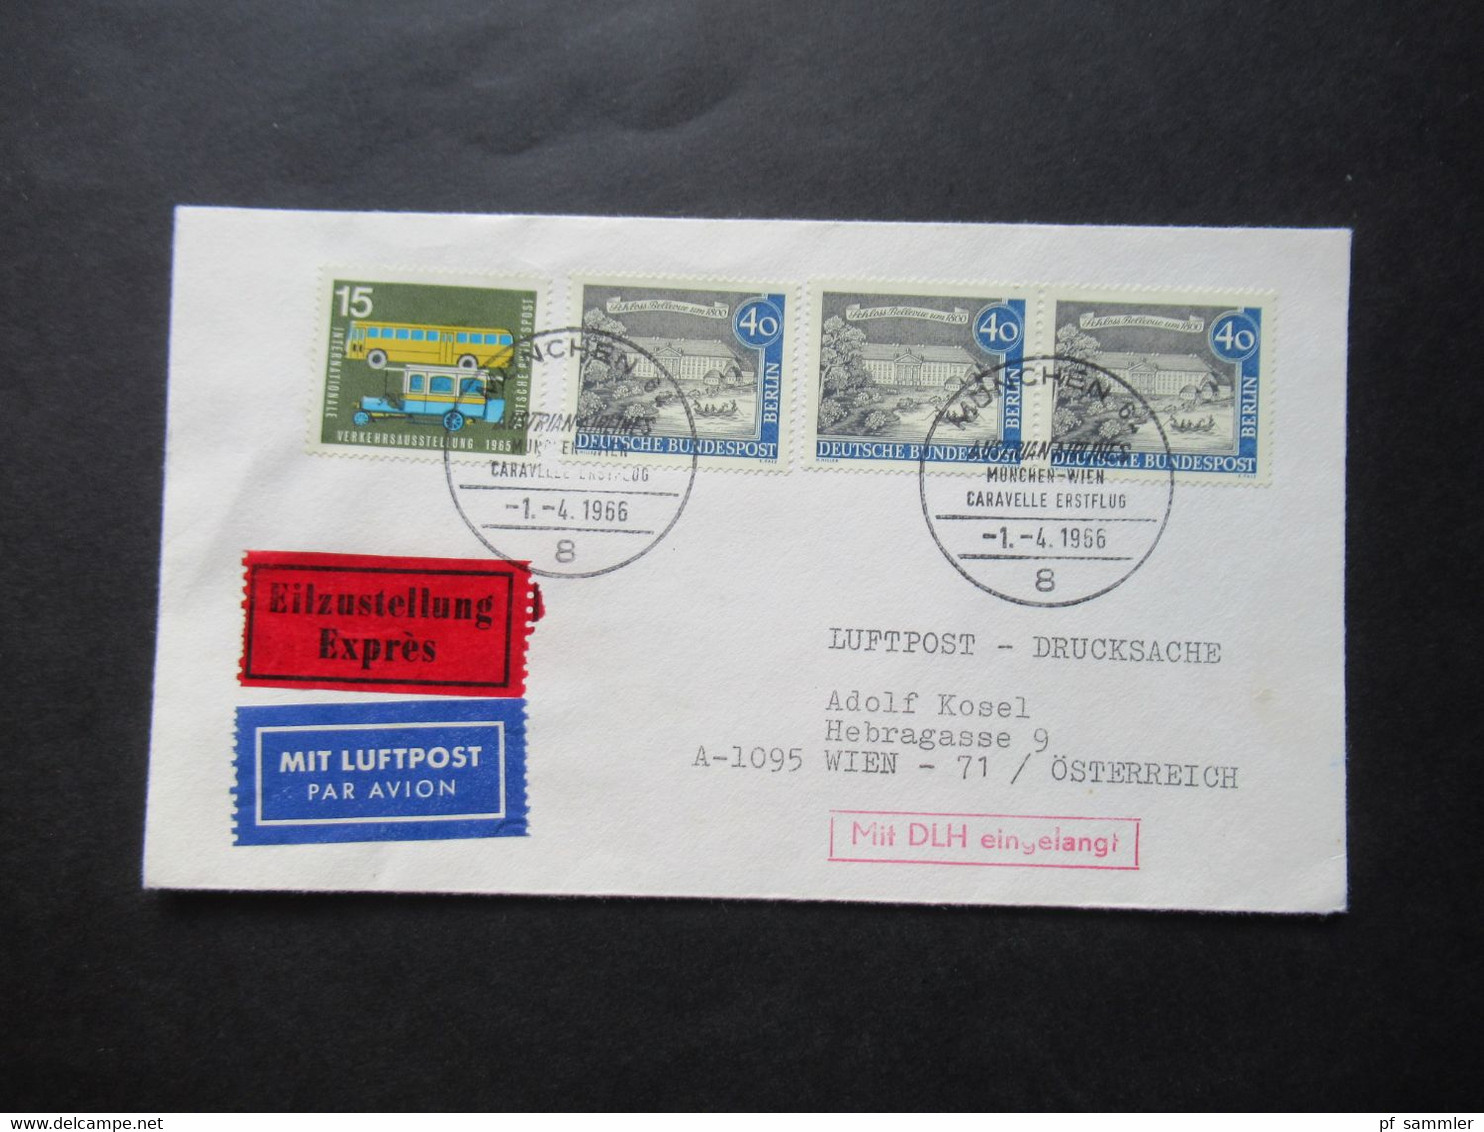 1966 Berlin (West) Alt Berlin Nr.220 MiF Mit Luftpost Eilzustellung Expres München - Wien / Stempel Mit DLH Eingelangt - Storia Postale